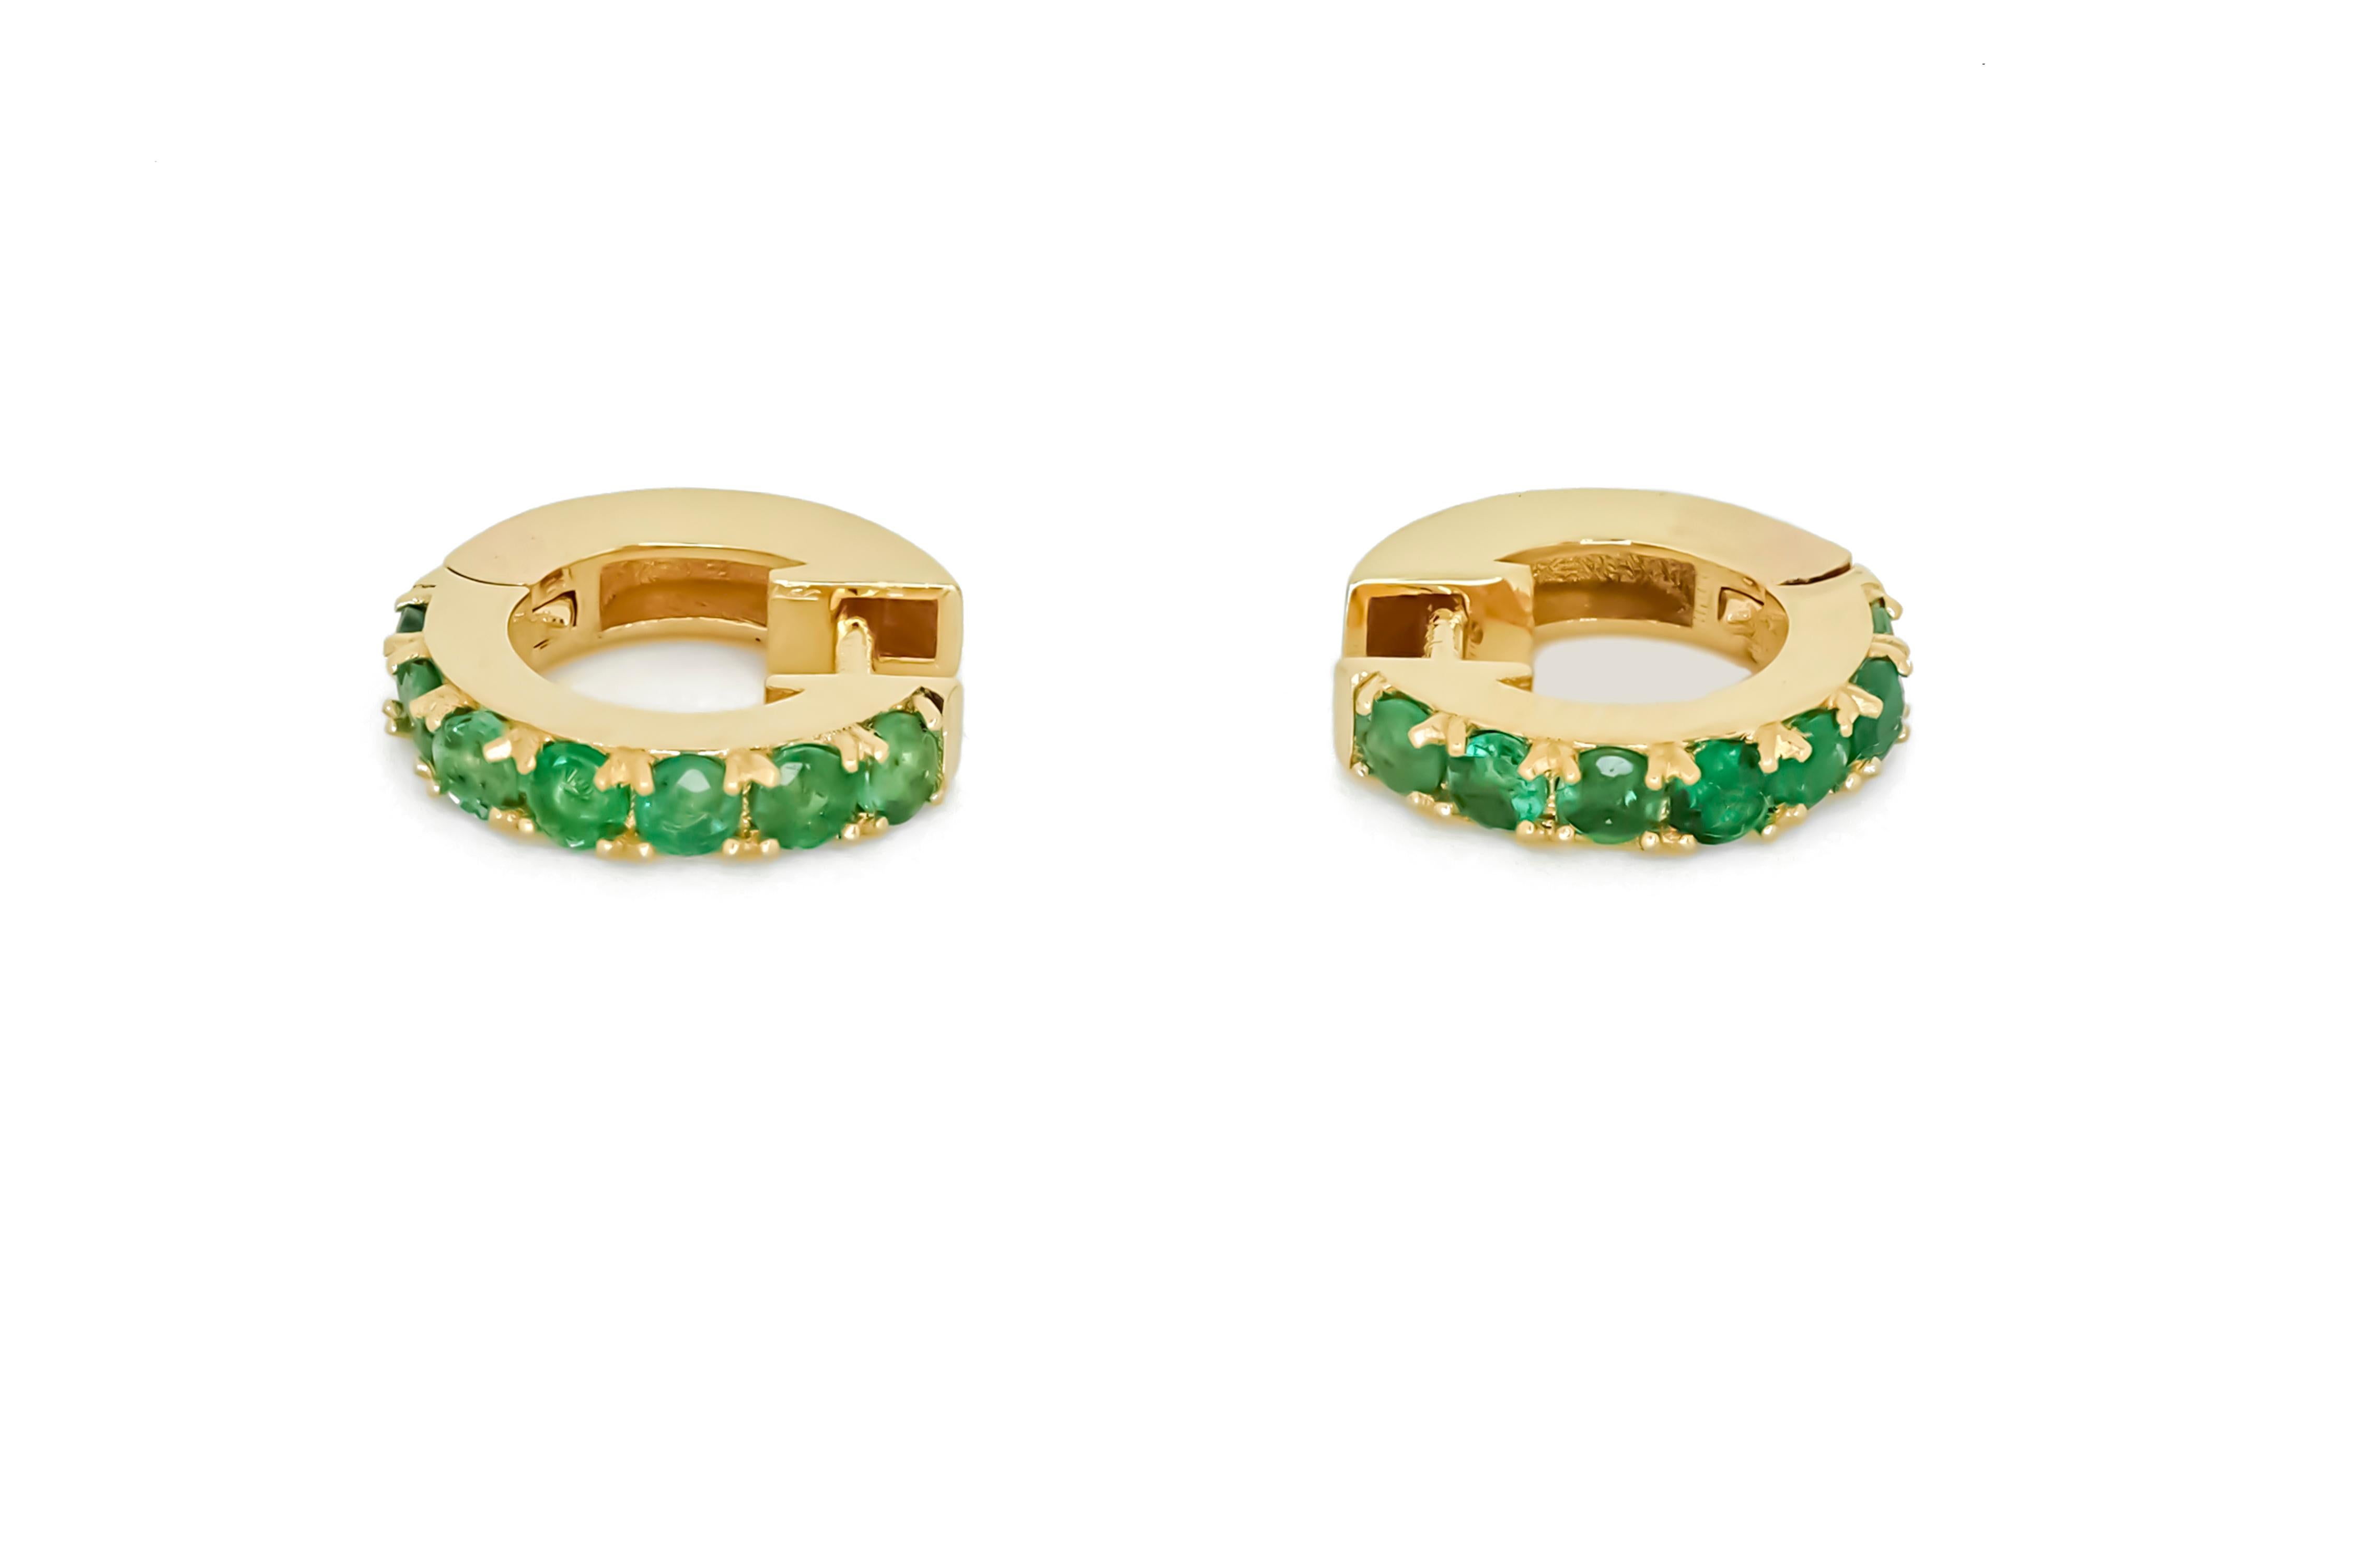 Hoop Earrings with Lab Emeralds. Huggy hoop emerald earrings in 14 Karat Gold

Metal: 14kt solid gold
Earring size:
The Inner diameter of Earrings: 10MM
The Outer diameter of Earrings: 12MM
Weight: 2.2. g.

Gemstones:
Lab emeralds: 14 piece, round